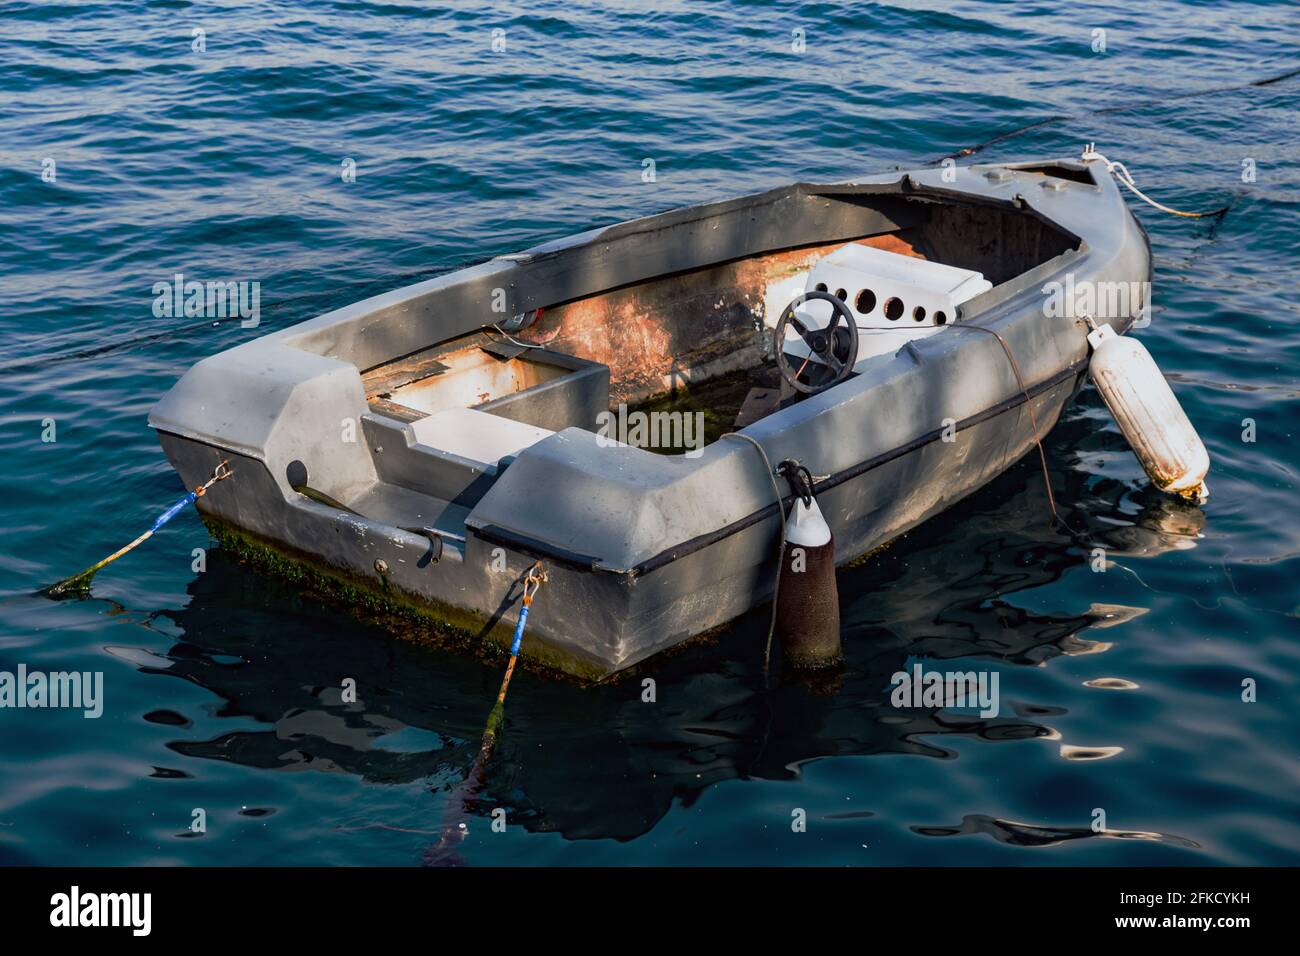 Barco abandonado de fibra de vidrio sin motor ni rotor, anclado en el mar, con sombras y luz del sol. Foto de stock